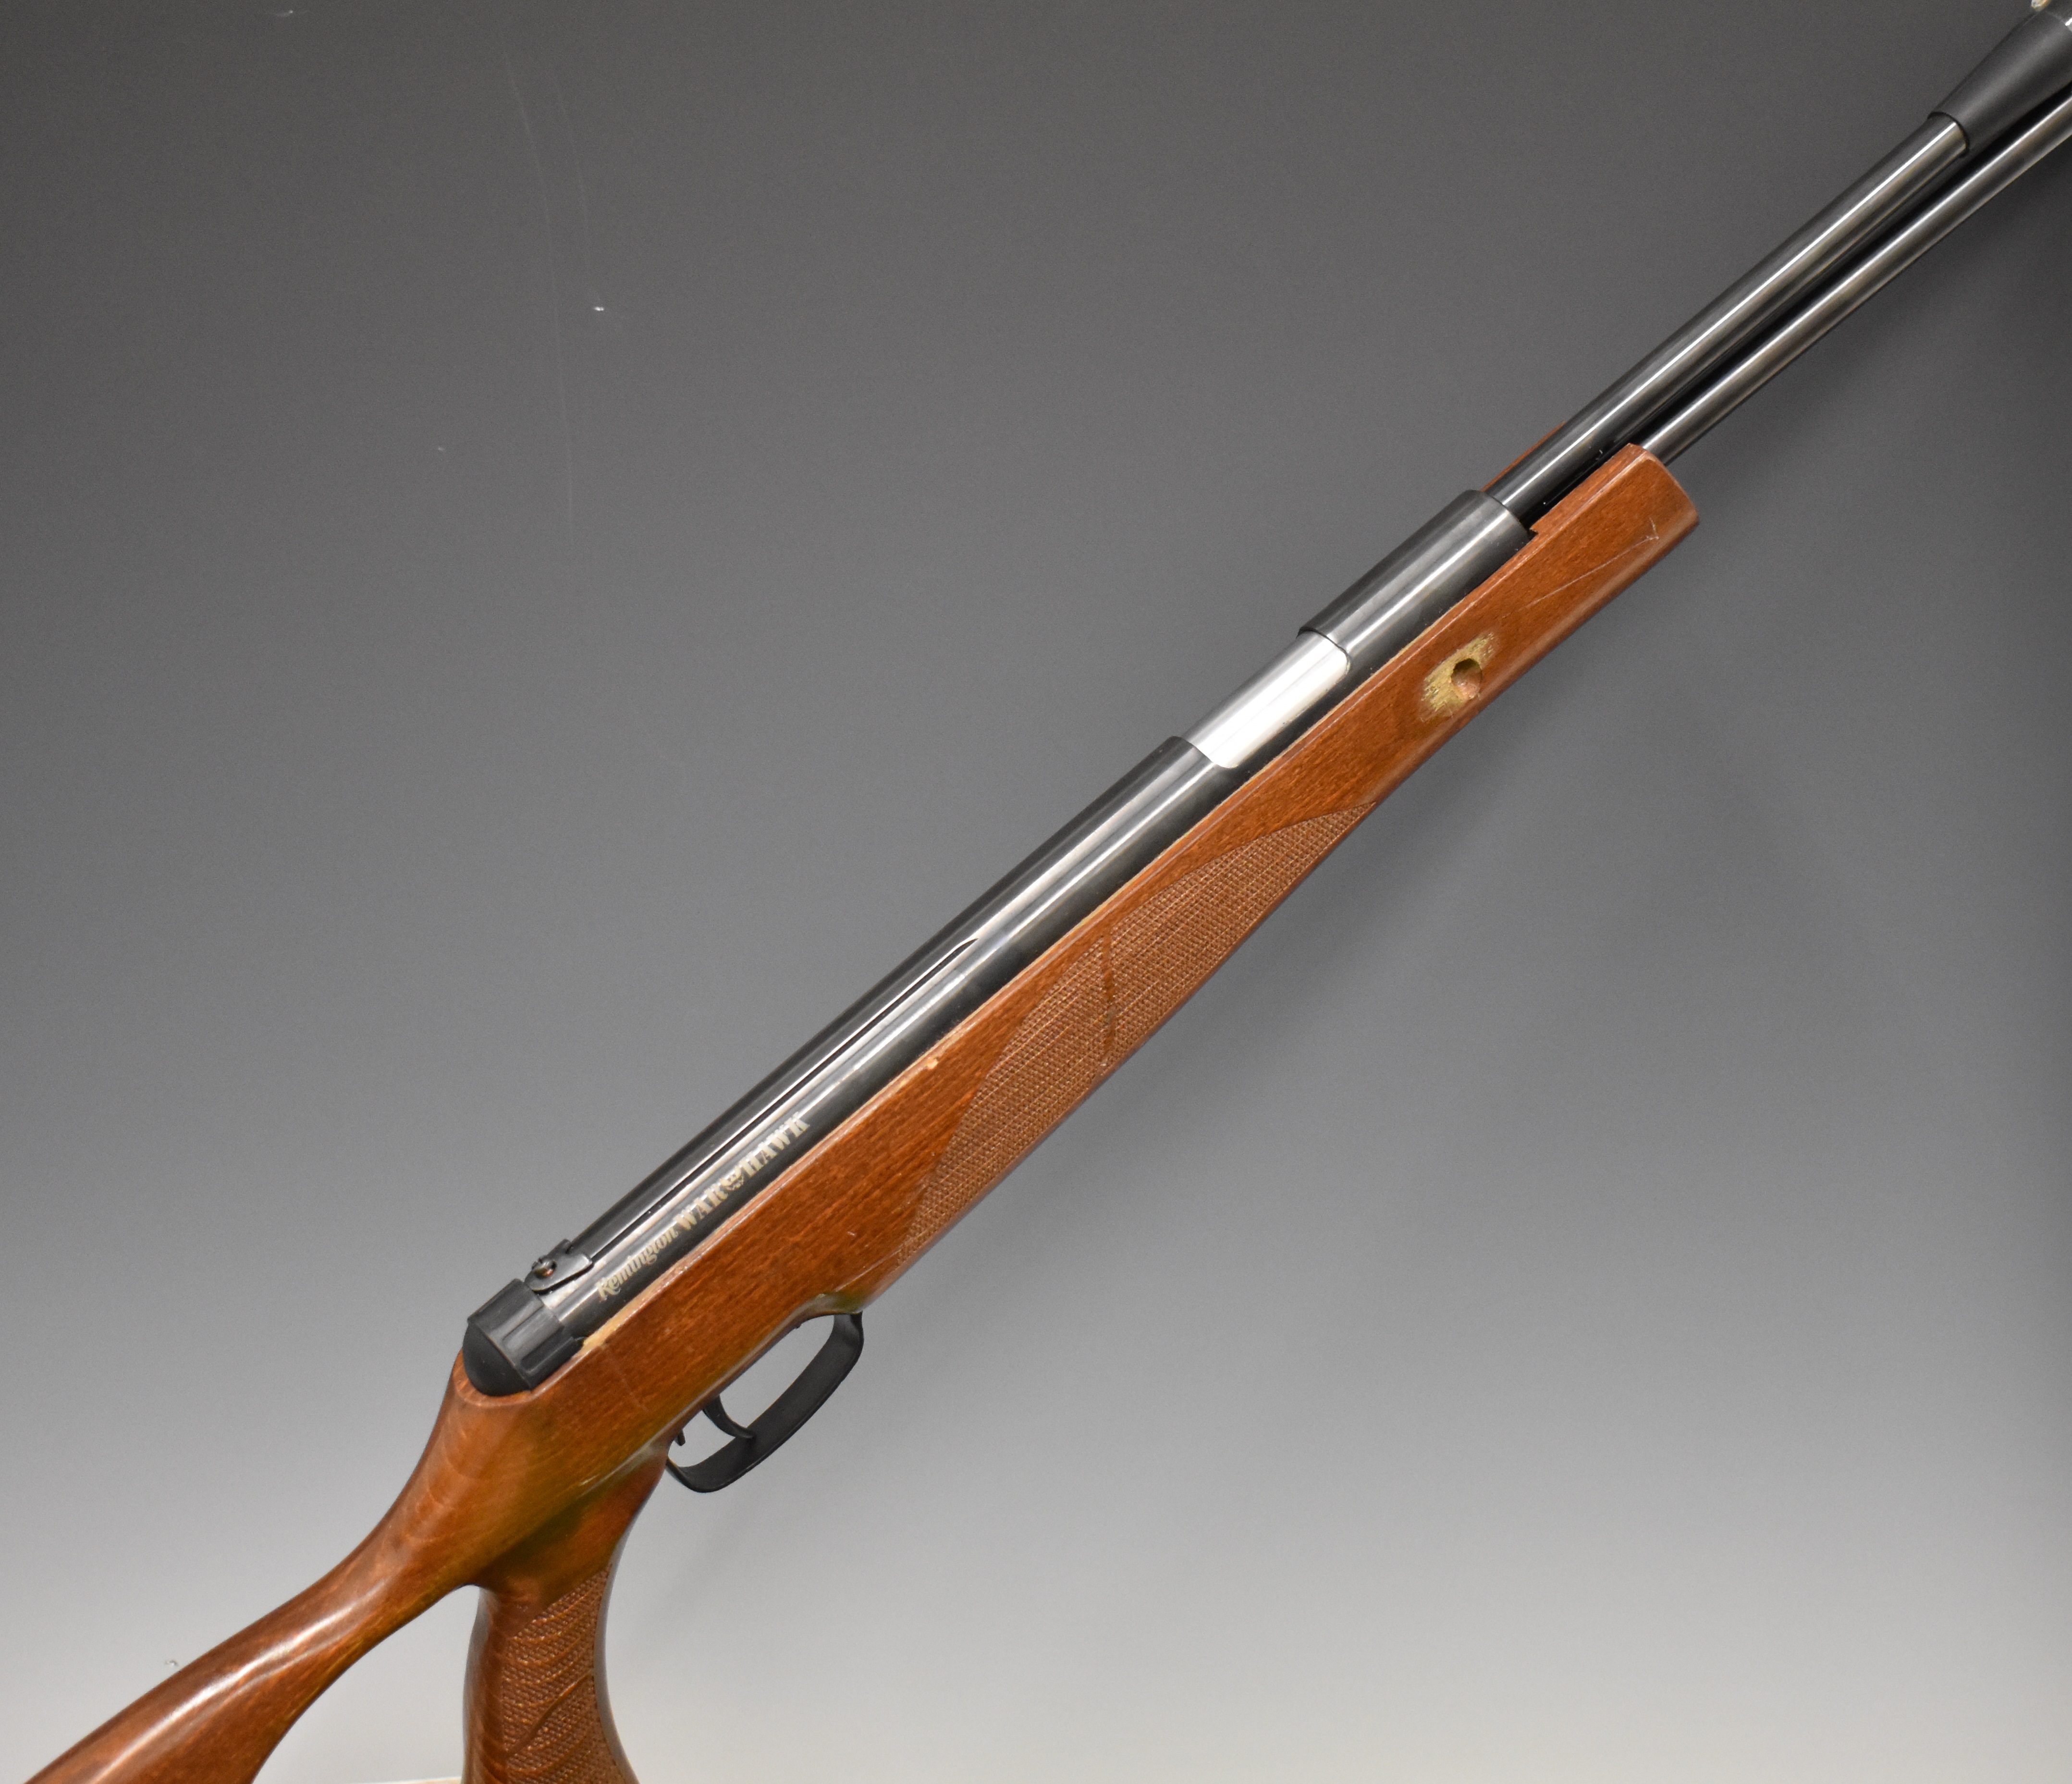 Remington Warhawk .177 under-lever air rifle with textured semi-pistol grip, raised cheek piece